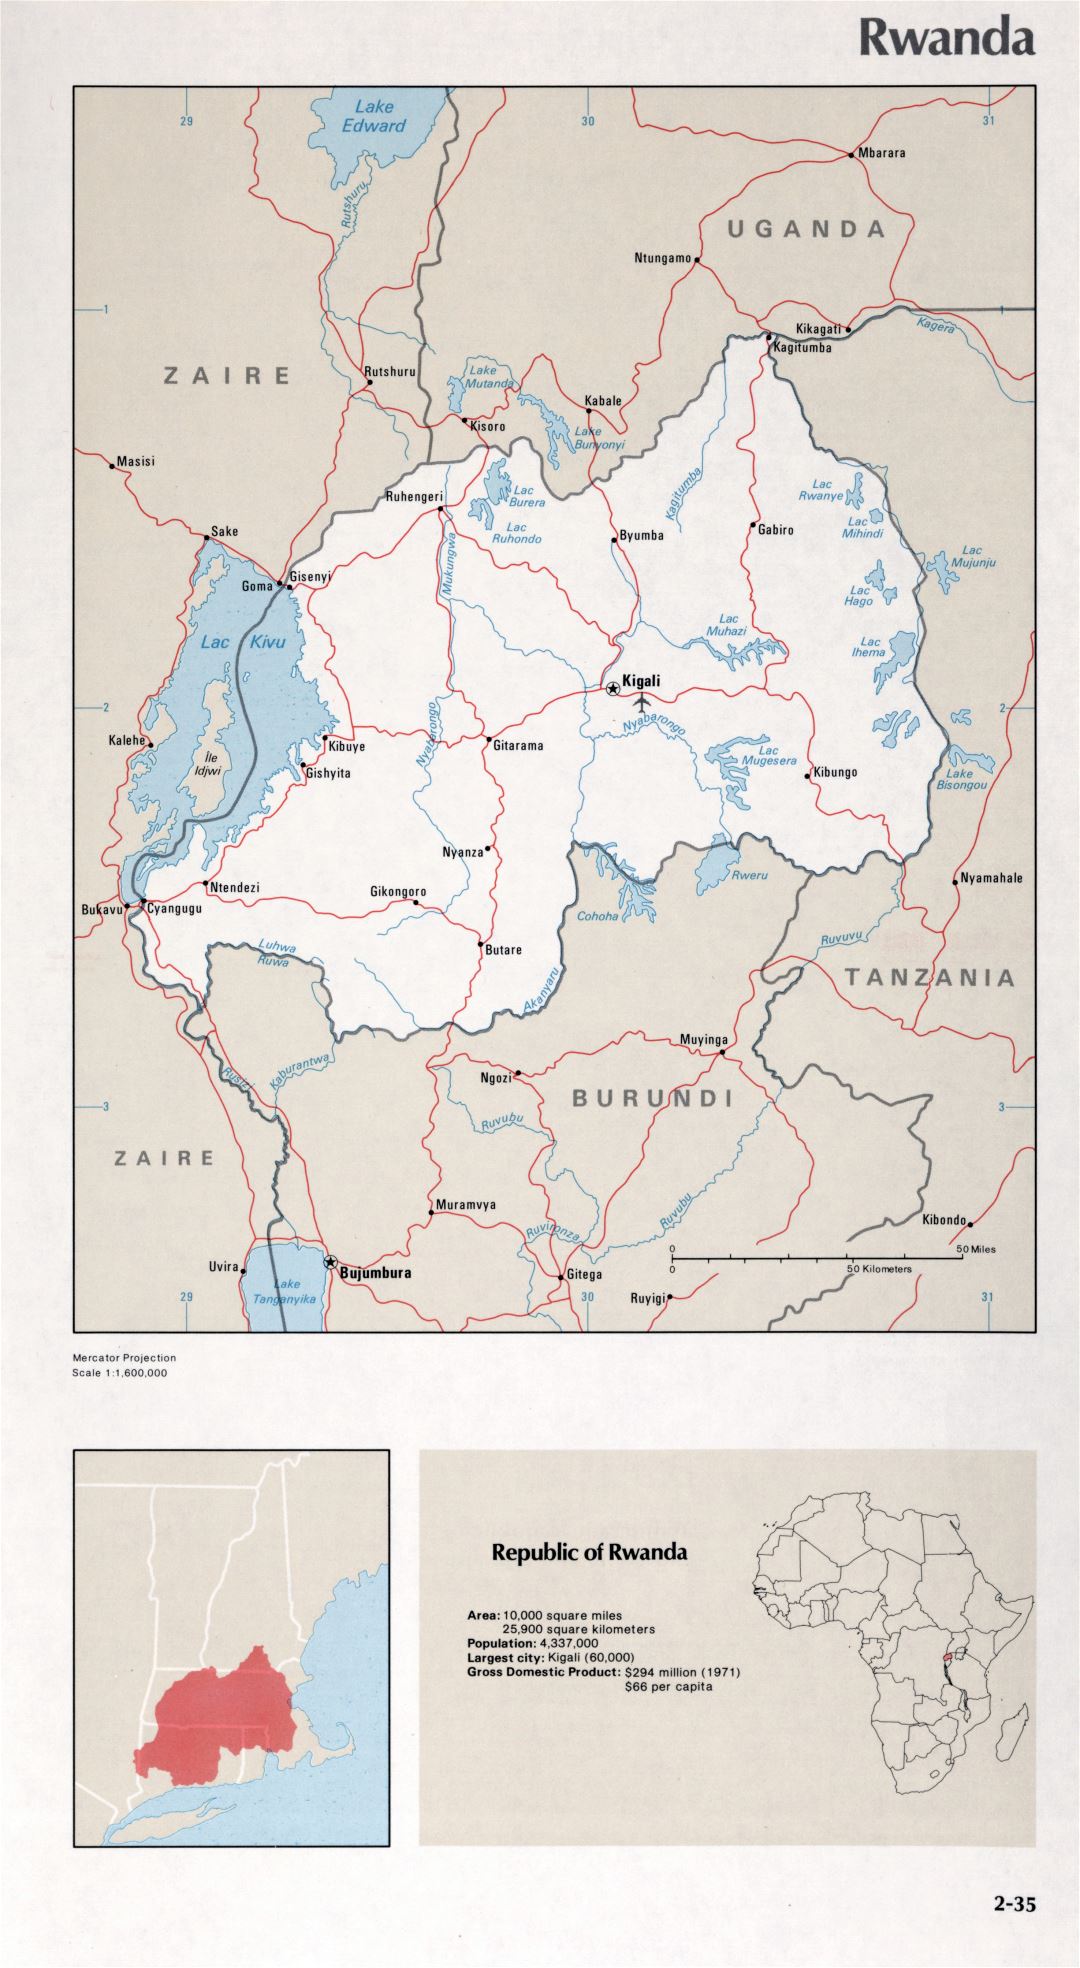 Map of Rwanda (2-35)